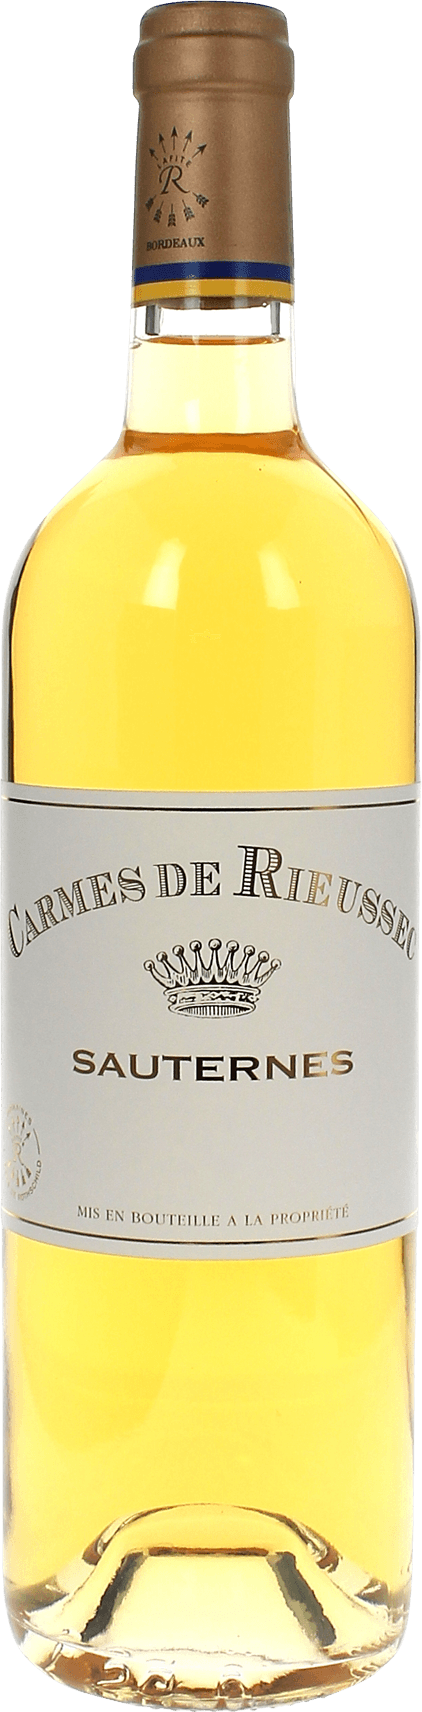 Carmes de rieussec 2016  Sauternes Barsac, Bordeaux blanc